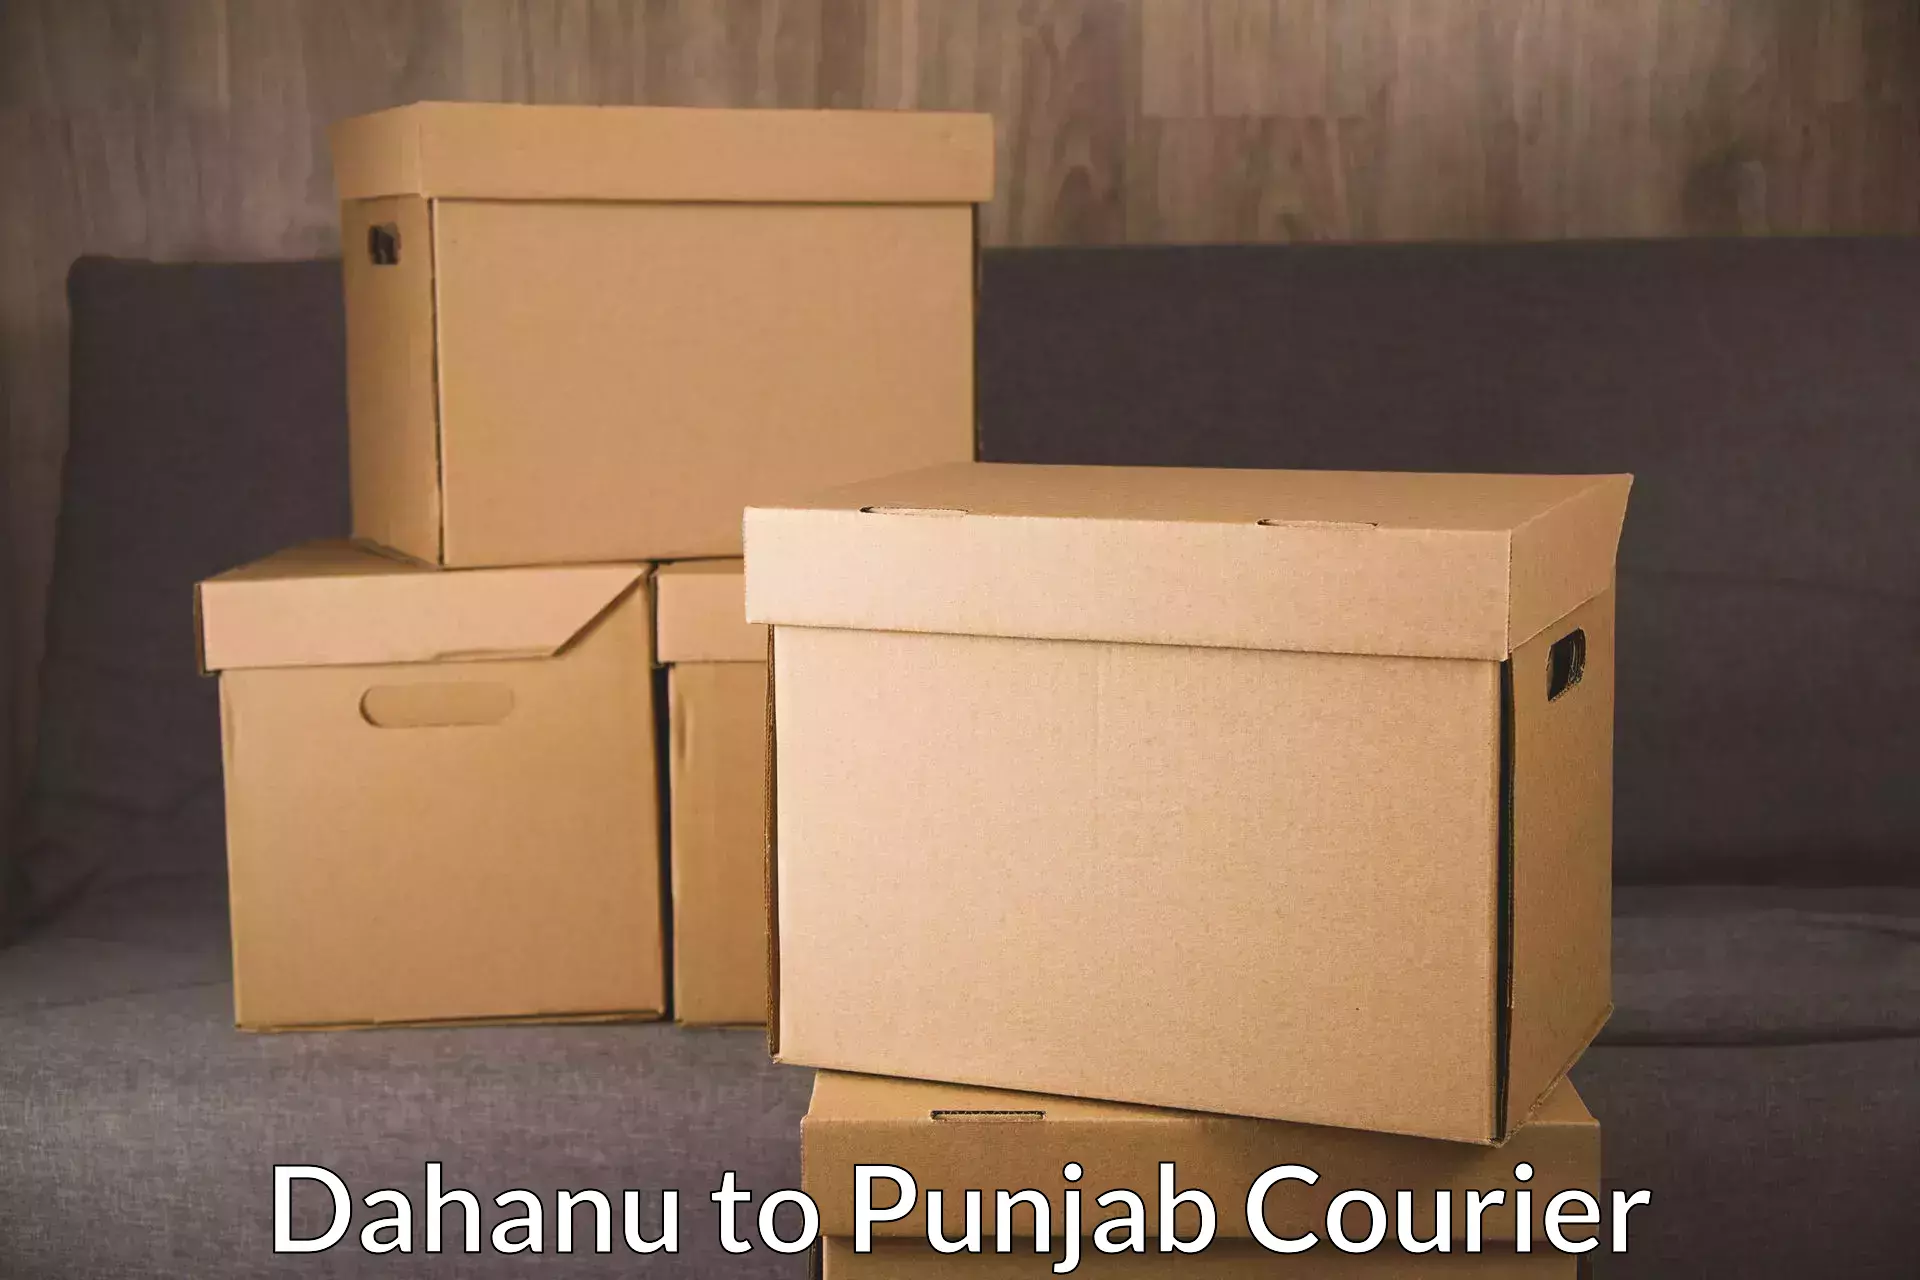 Global shipping solutions Dahanu to Sangrur